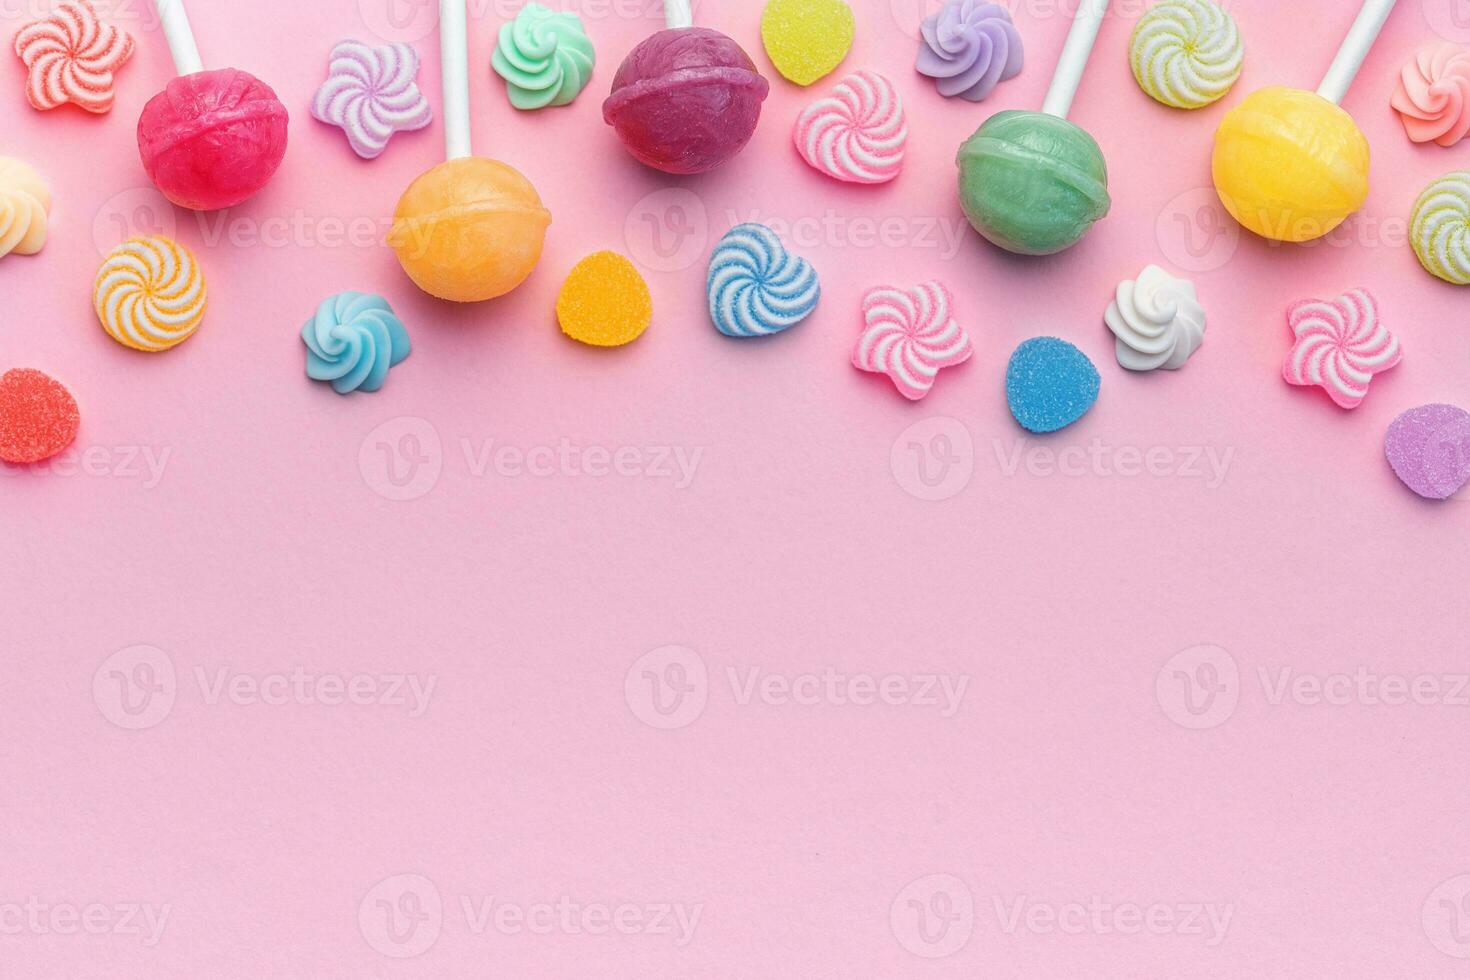 ljuv klubbor och godis på rosa bakgrund foto